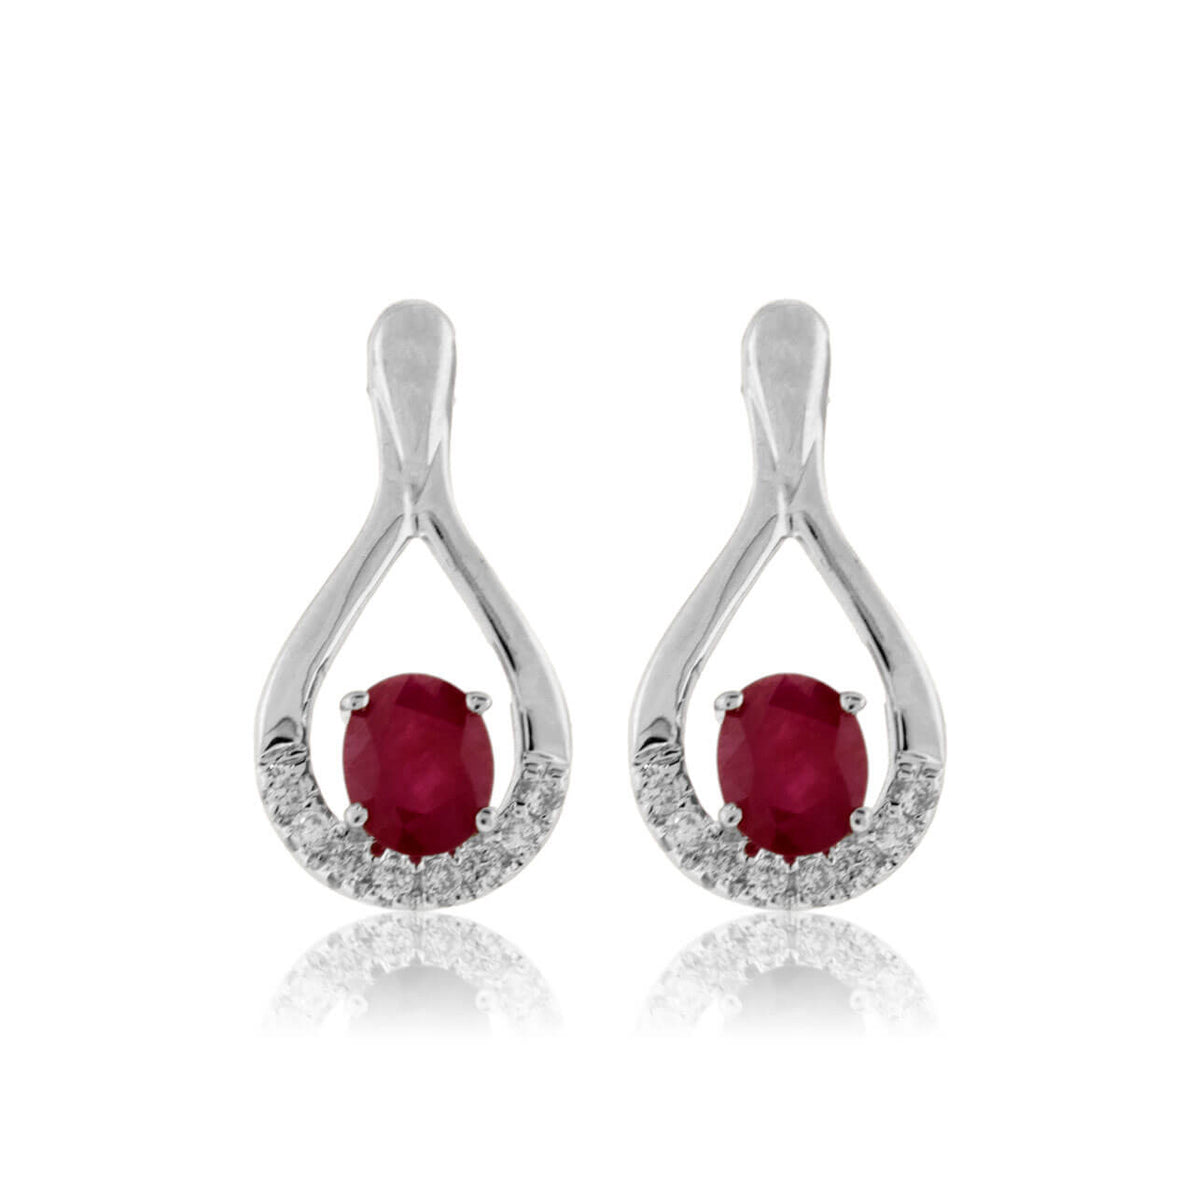 Oval Shaped Ruby and Diamond Earrings - Park City Jewelers